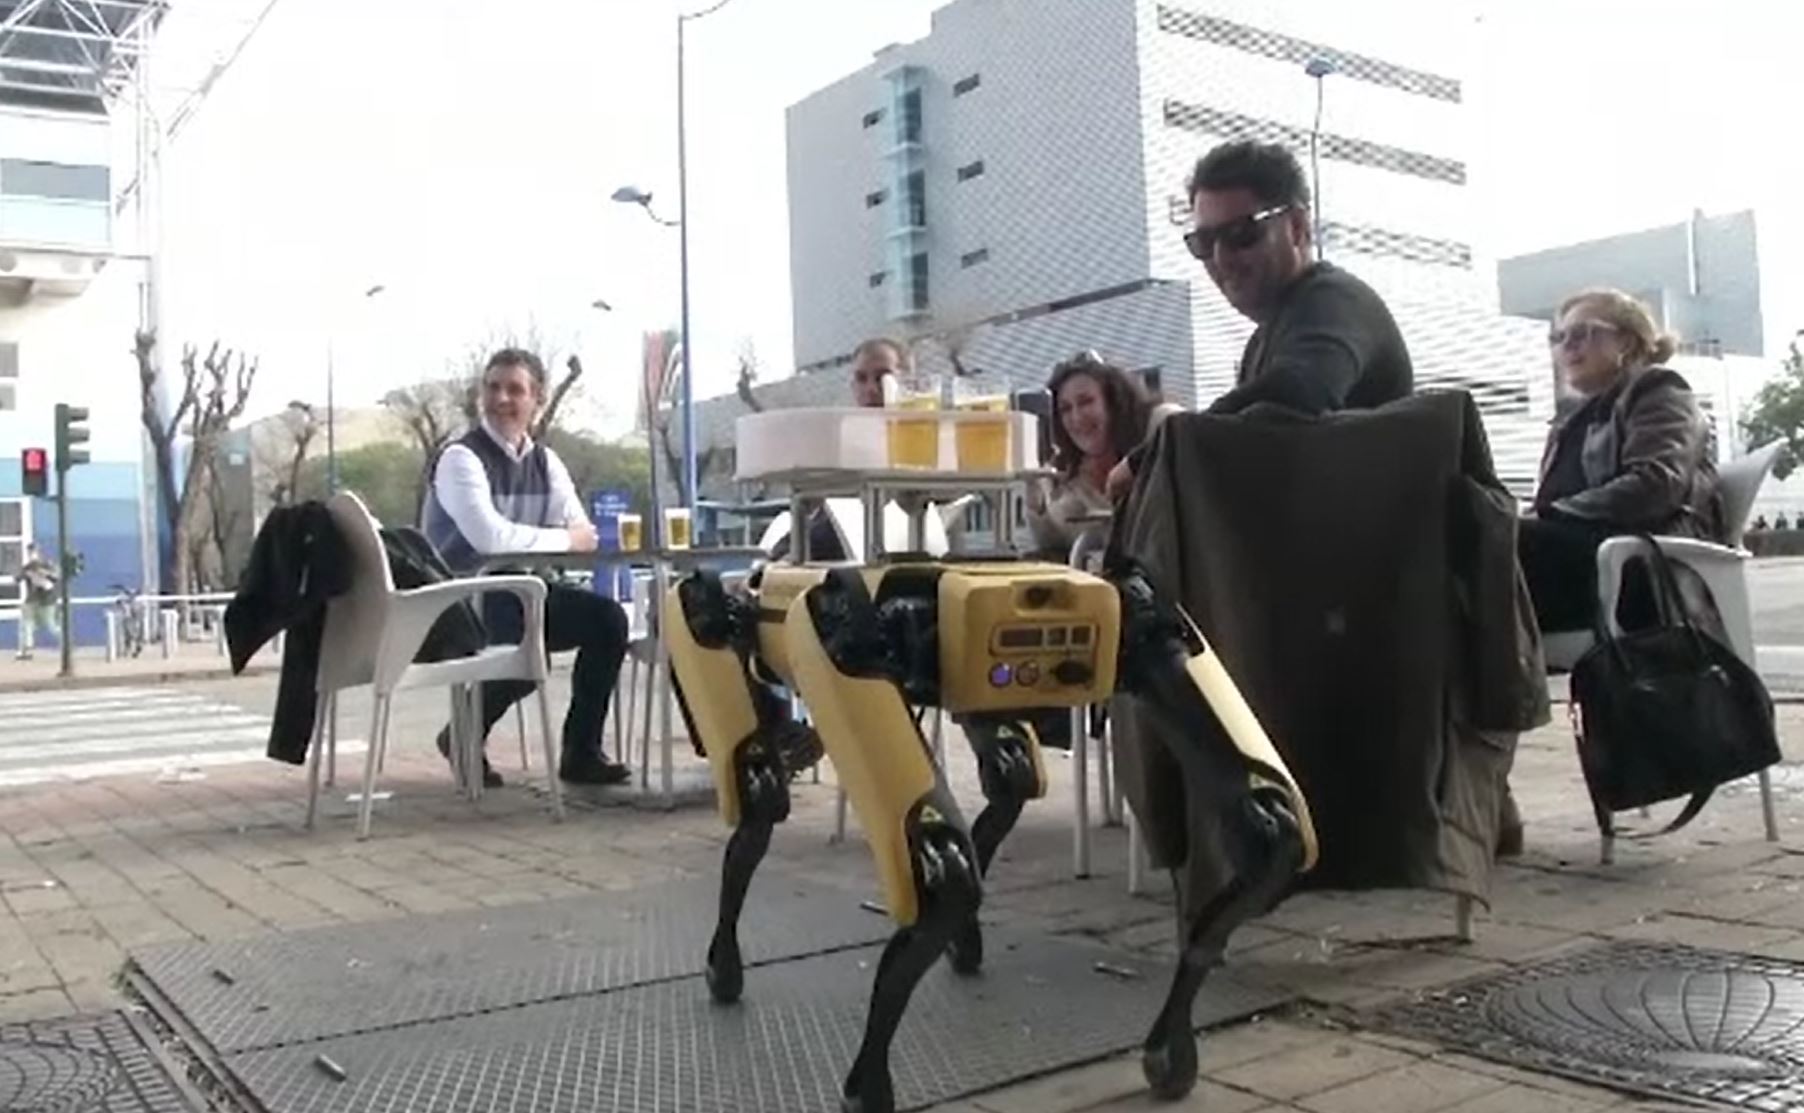 Chelnerii și barmanii, înlocuiți de roboți în mai multe localuri din Sevilla. Ce părere au clienții